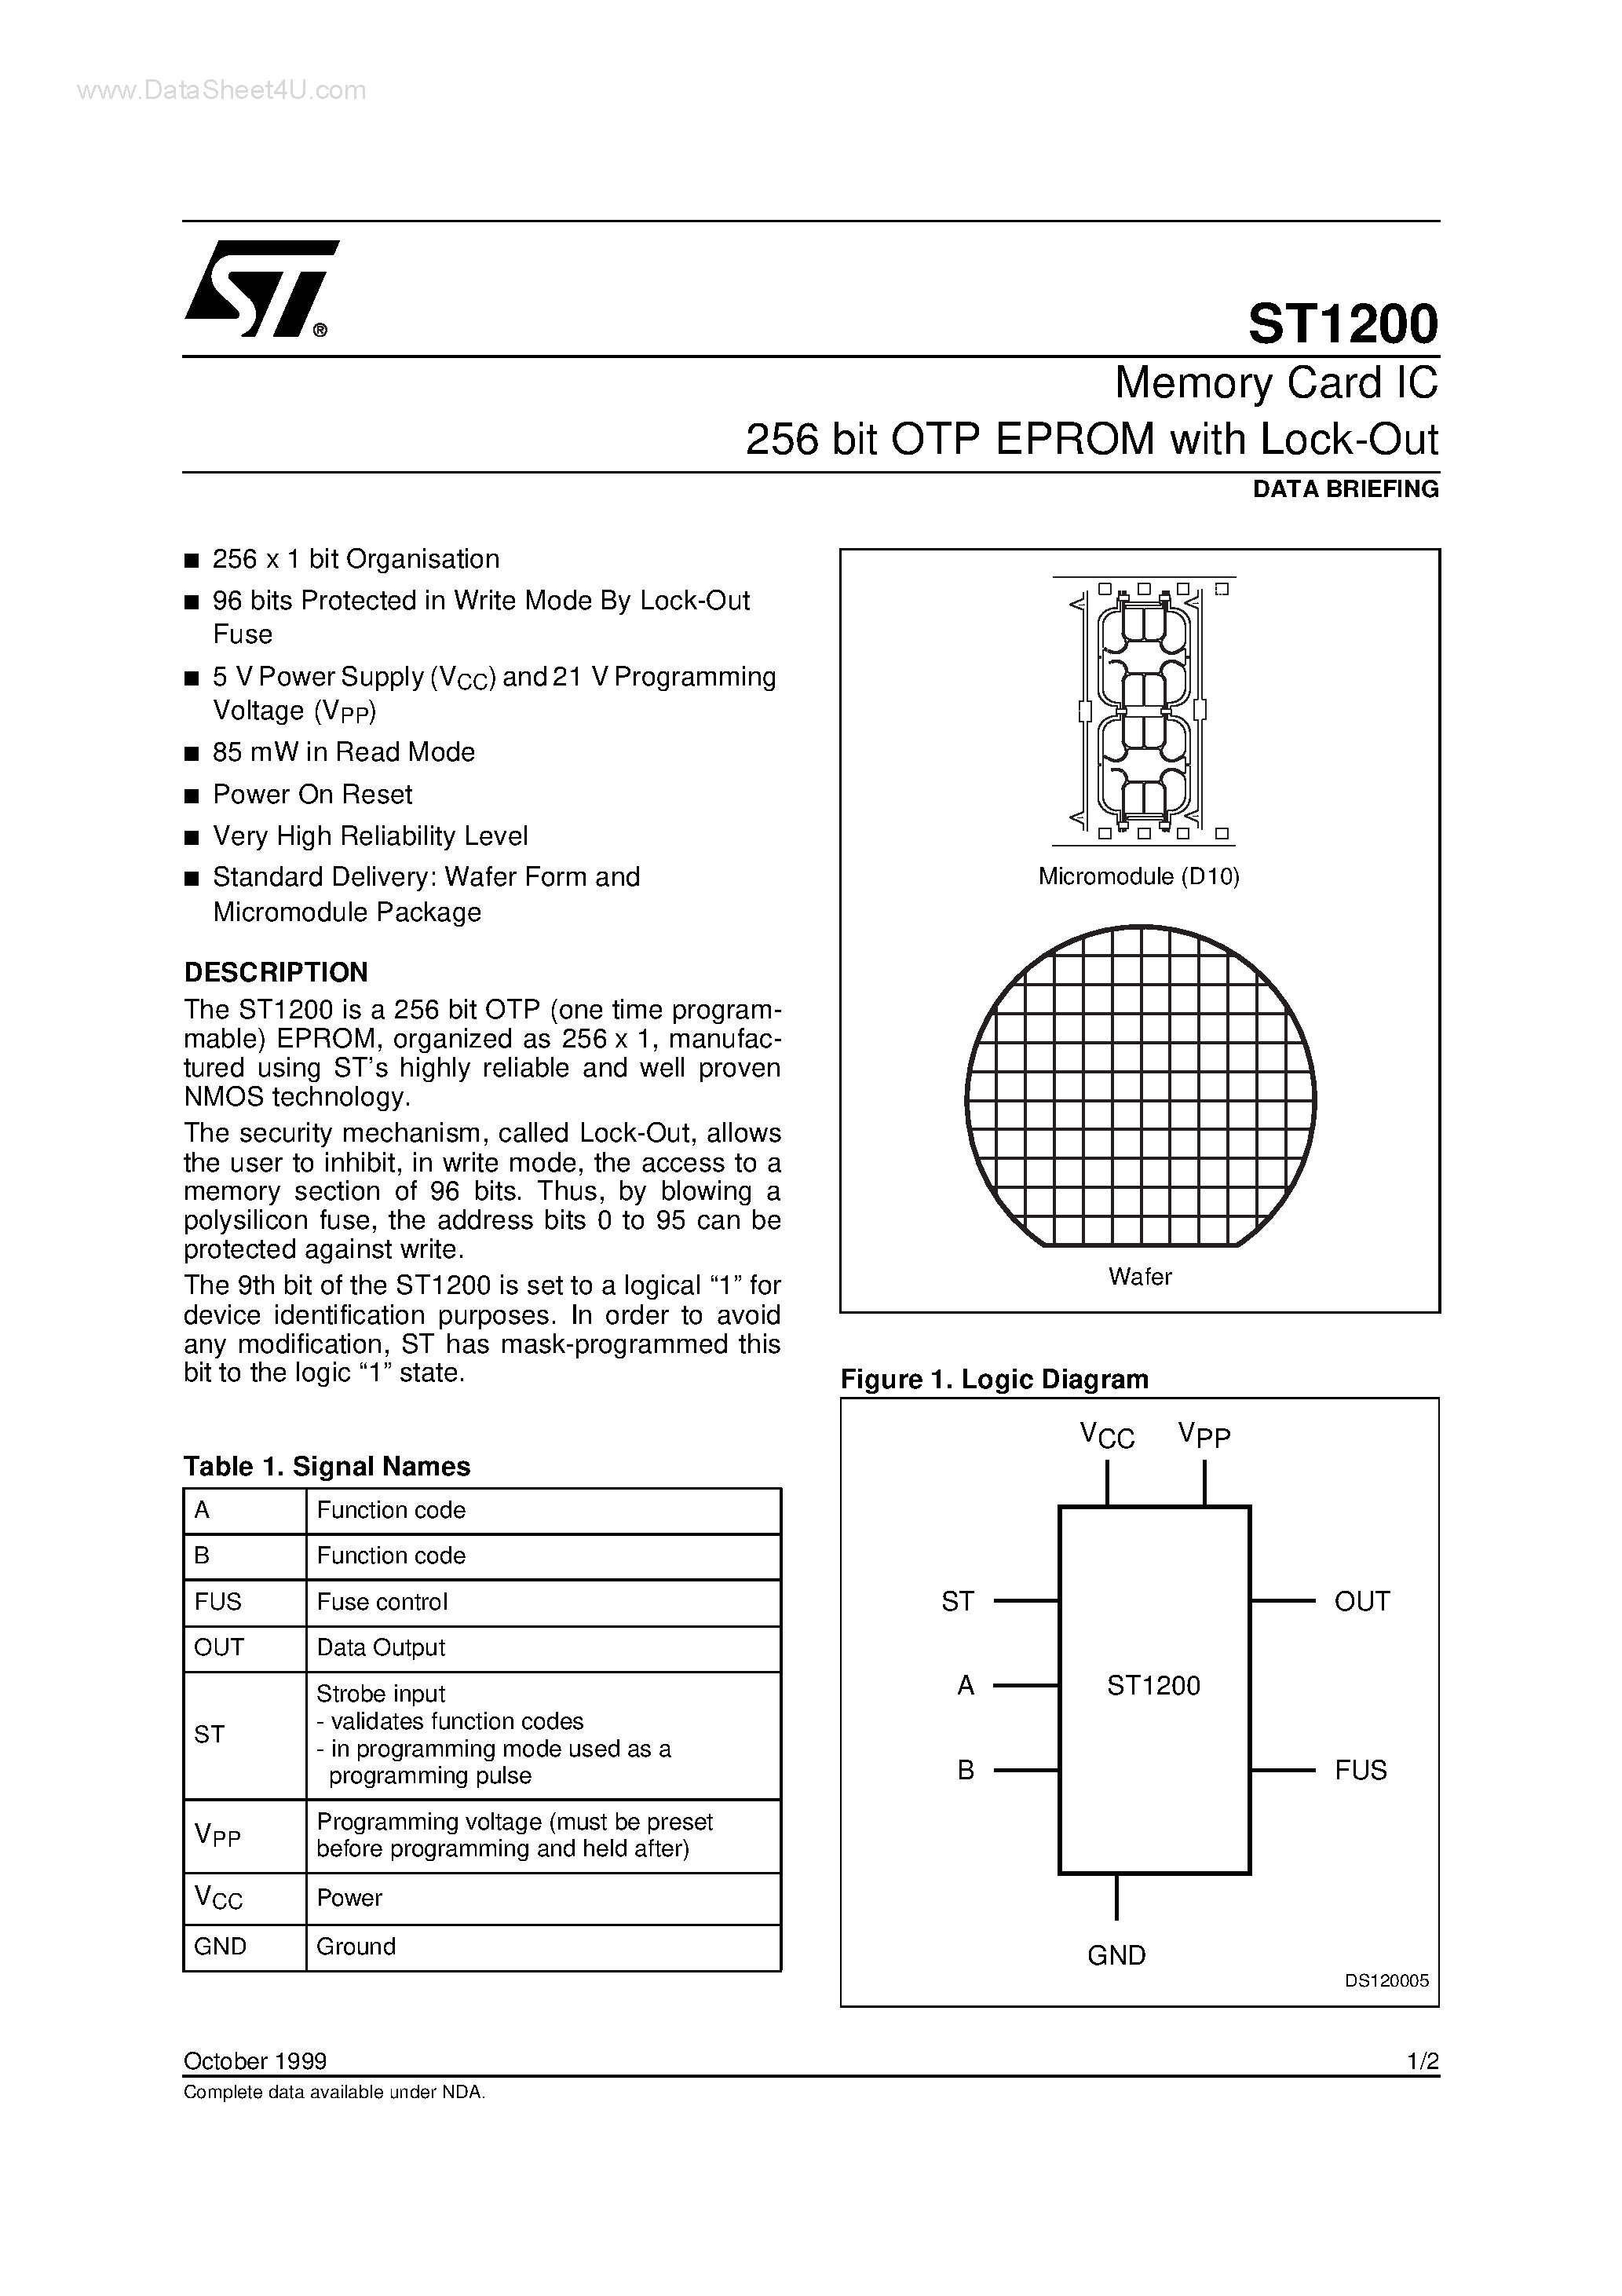 Даташит ST1200 - Memory Card IC 256 bit OTP EPROM страница 1